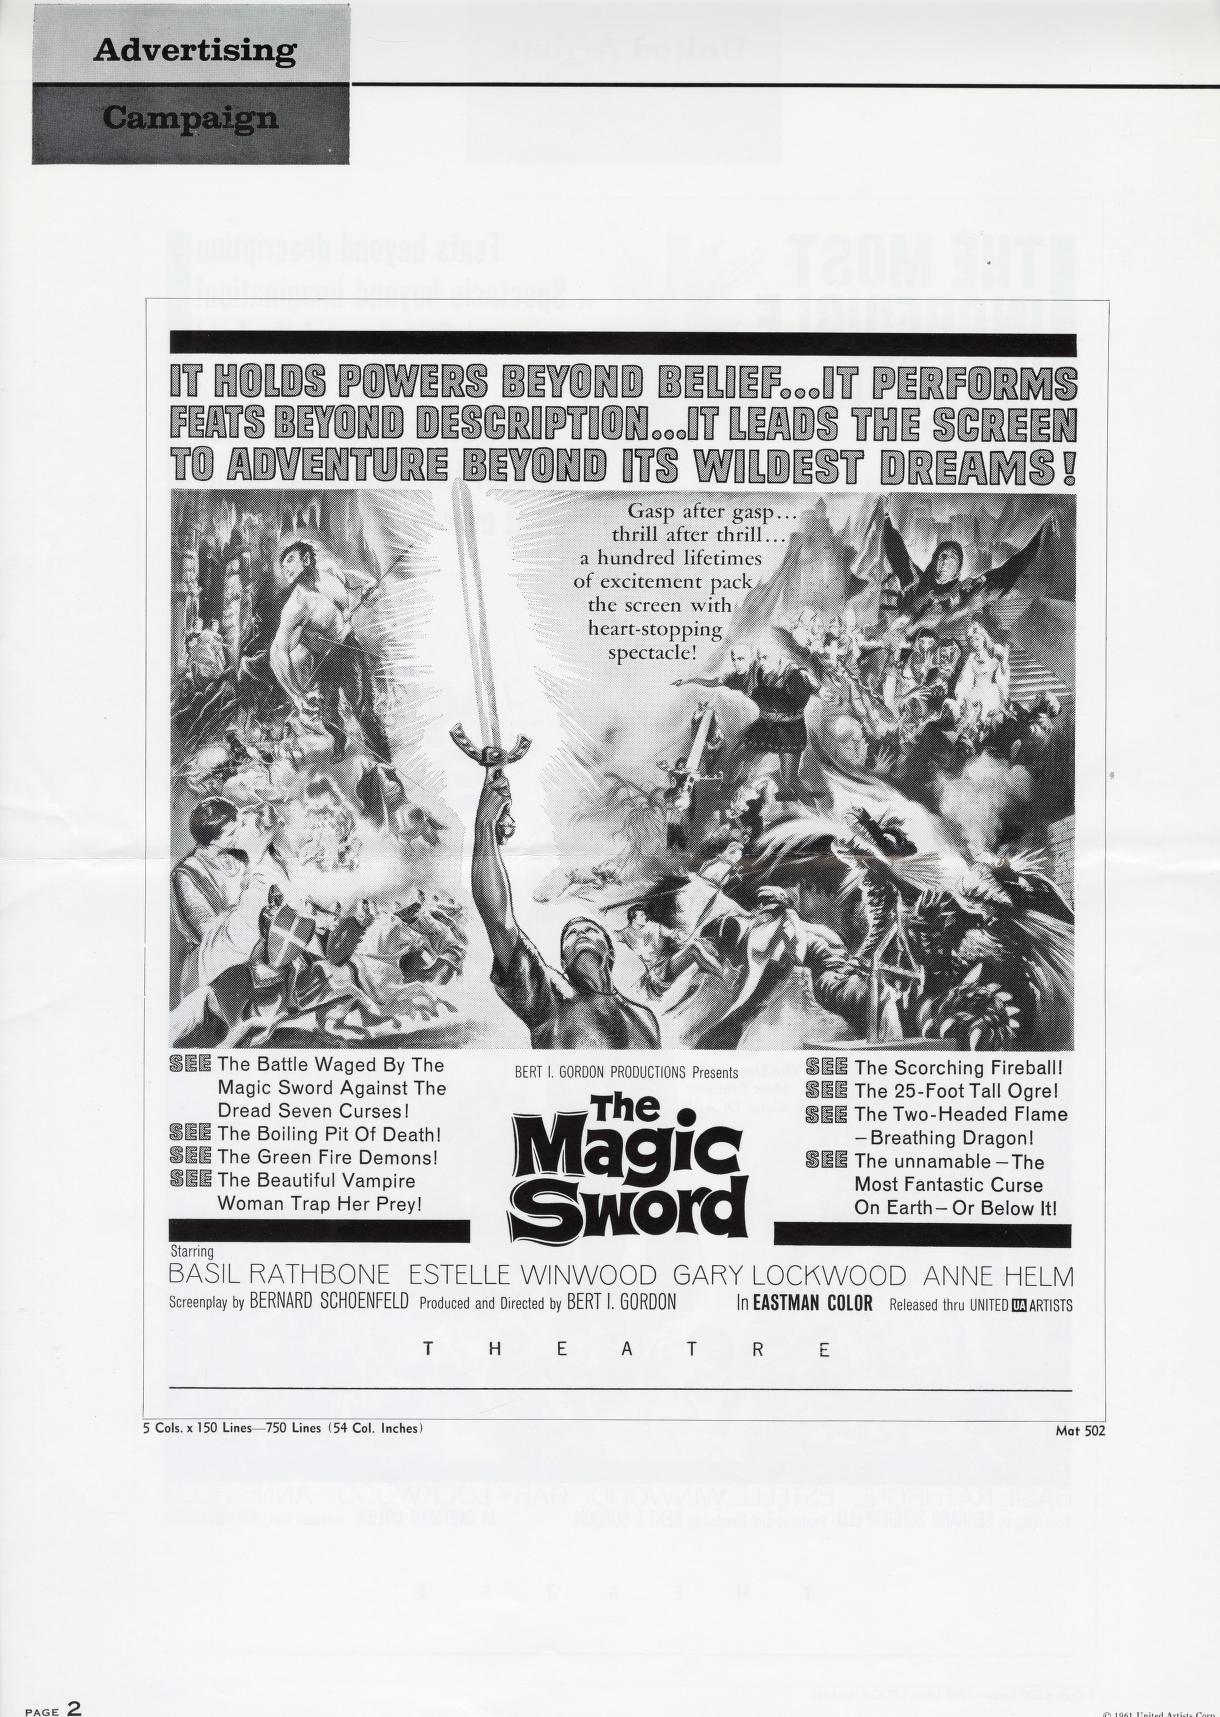 The Magic Sword (United Artists Pressbook, 1962)